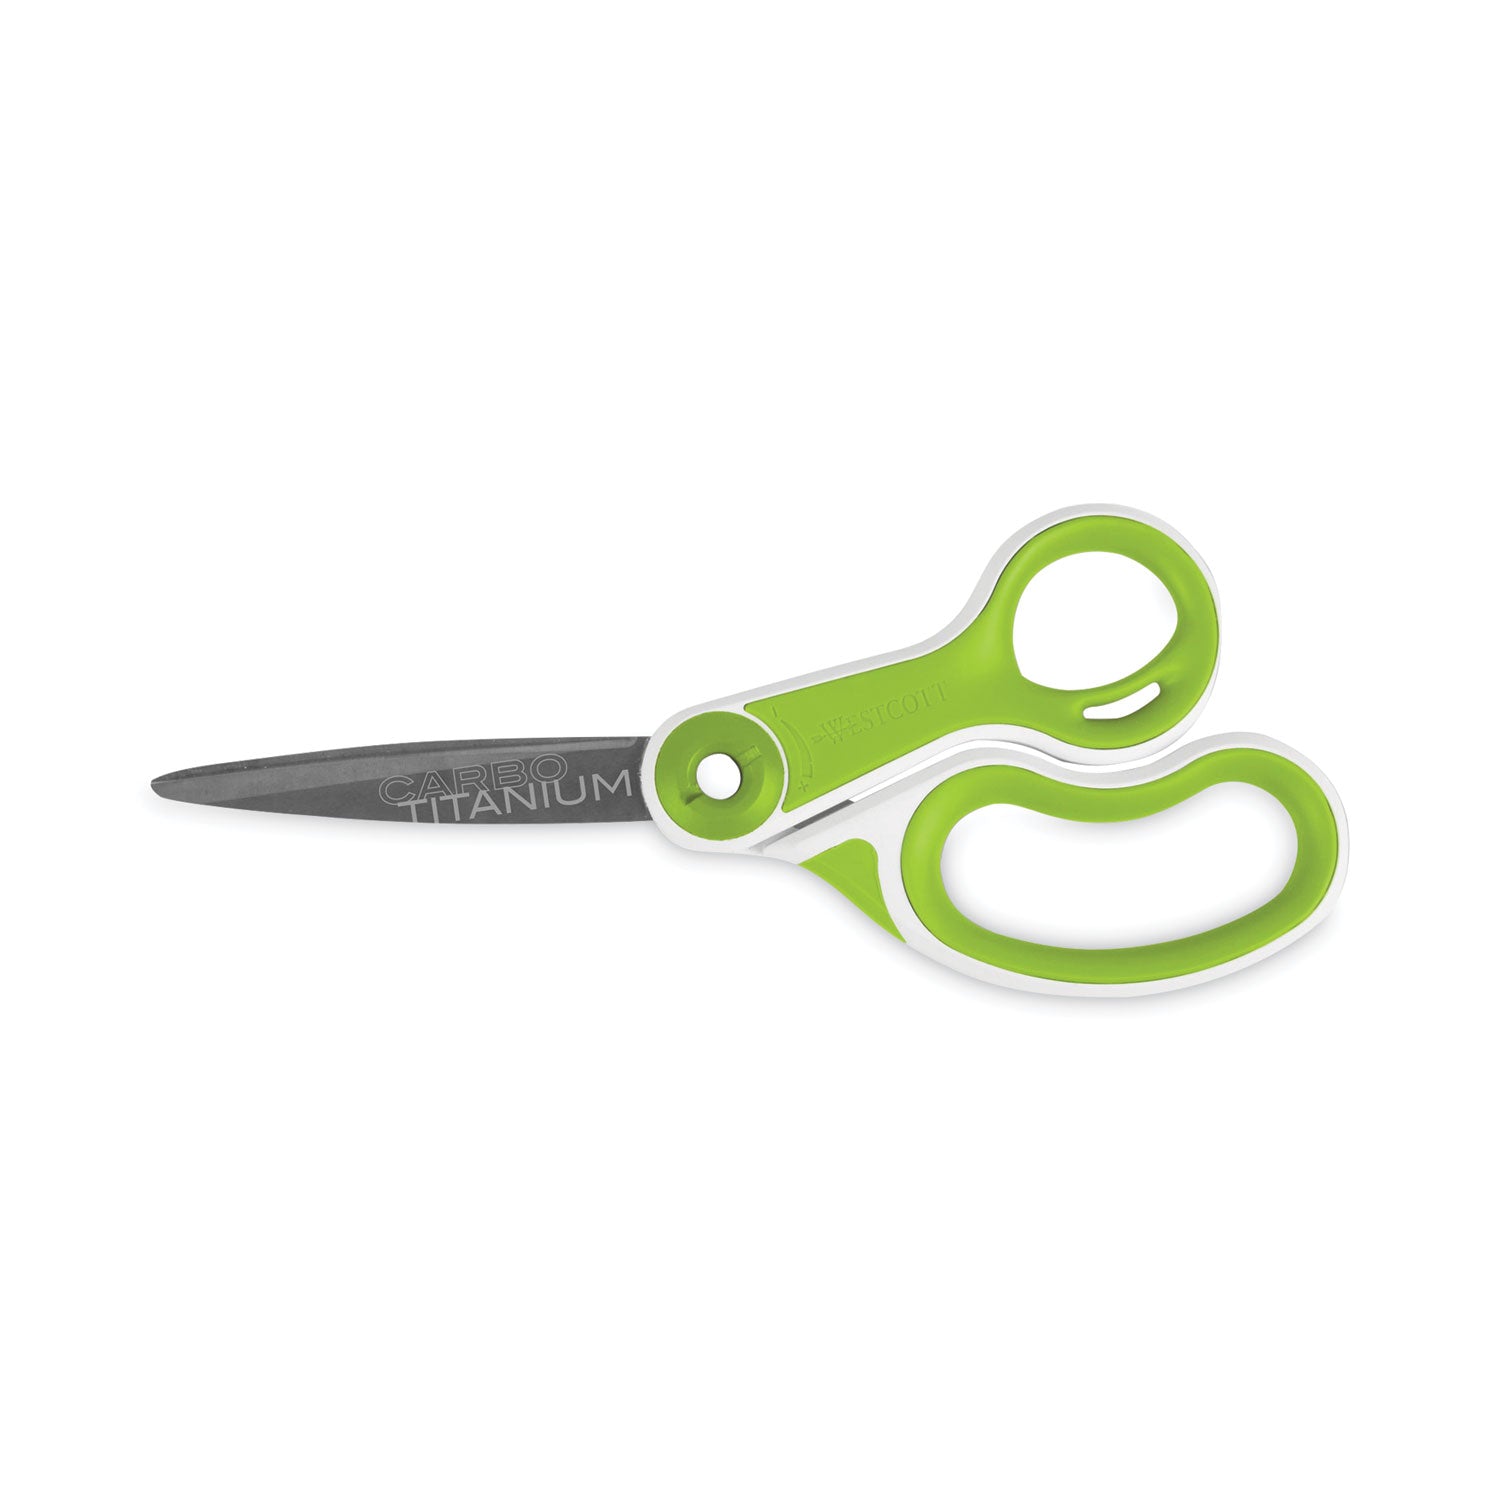 carbotitanium-bonded-scissors-8-long-325-cut-length-white-green-bent-handle_acm17444 - 1